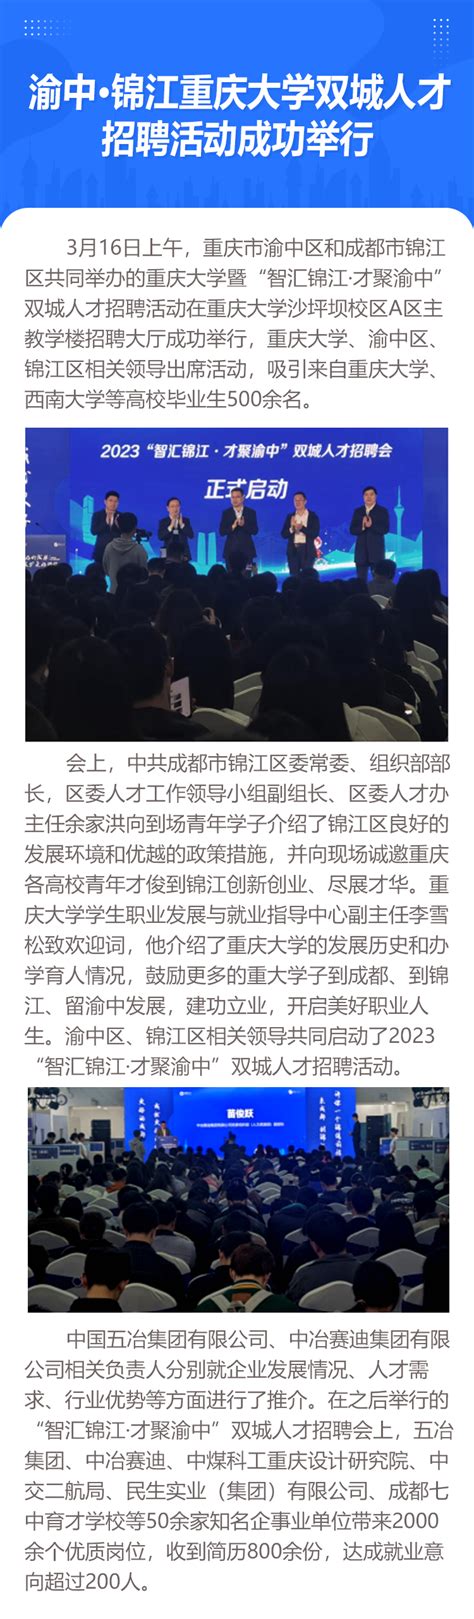 渝中·锦江重庆大学双城人才招聘活动 成功举行 - 企如云软件公共服务平台